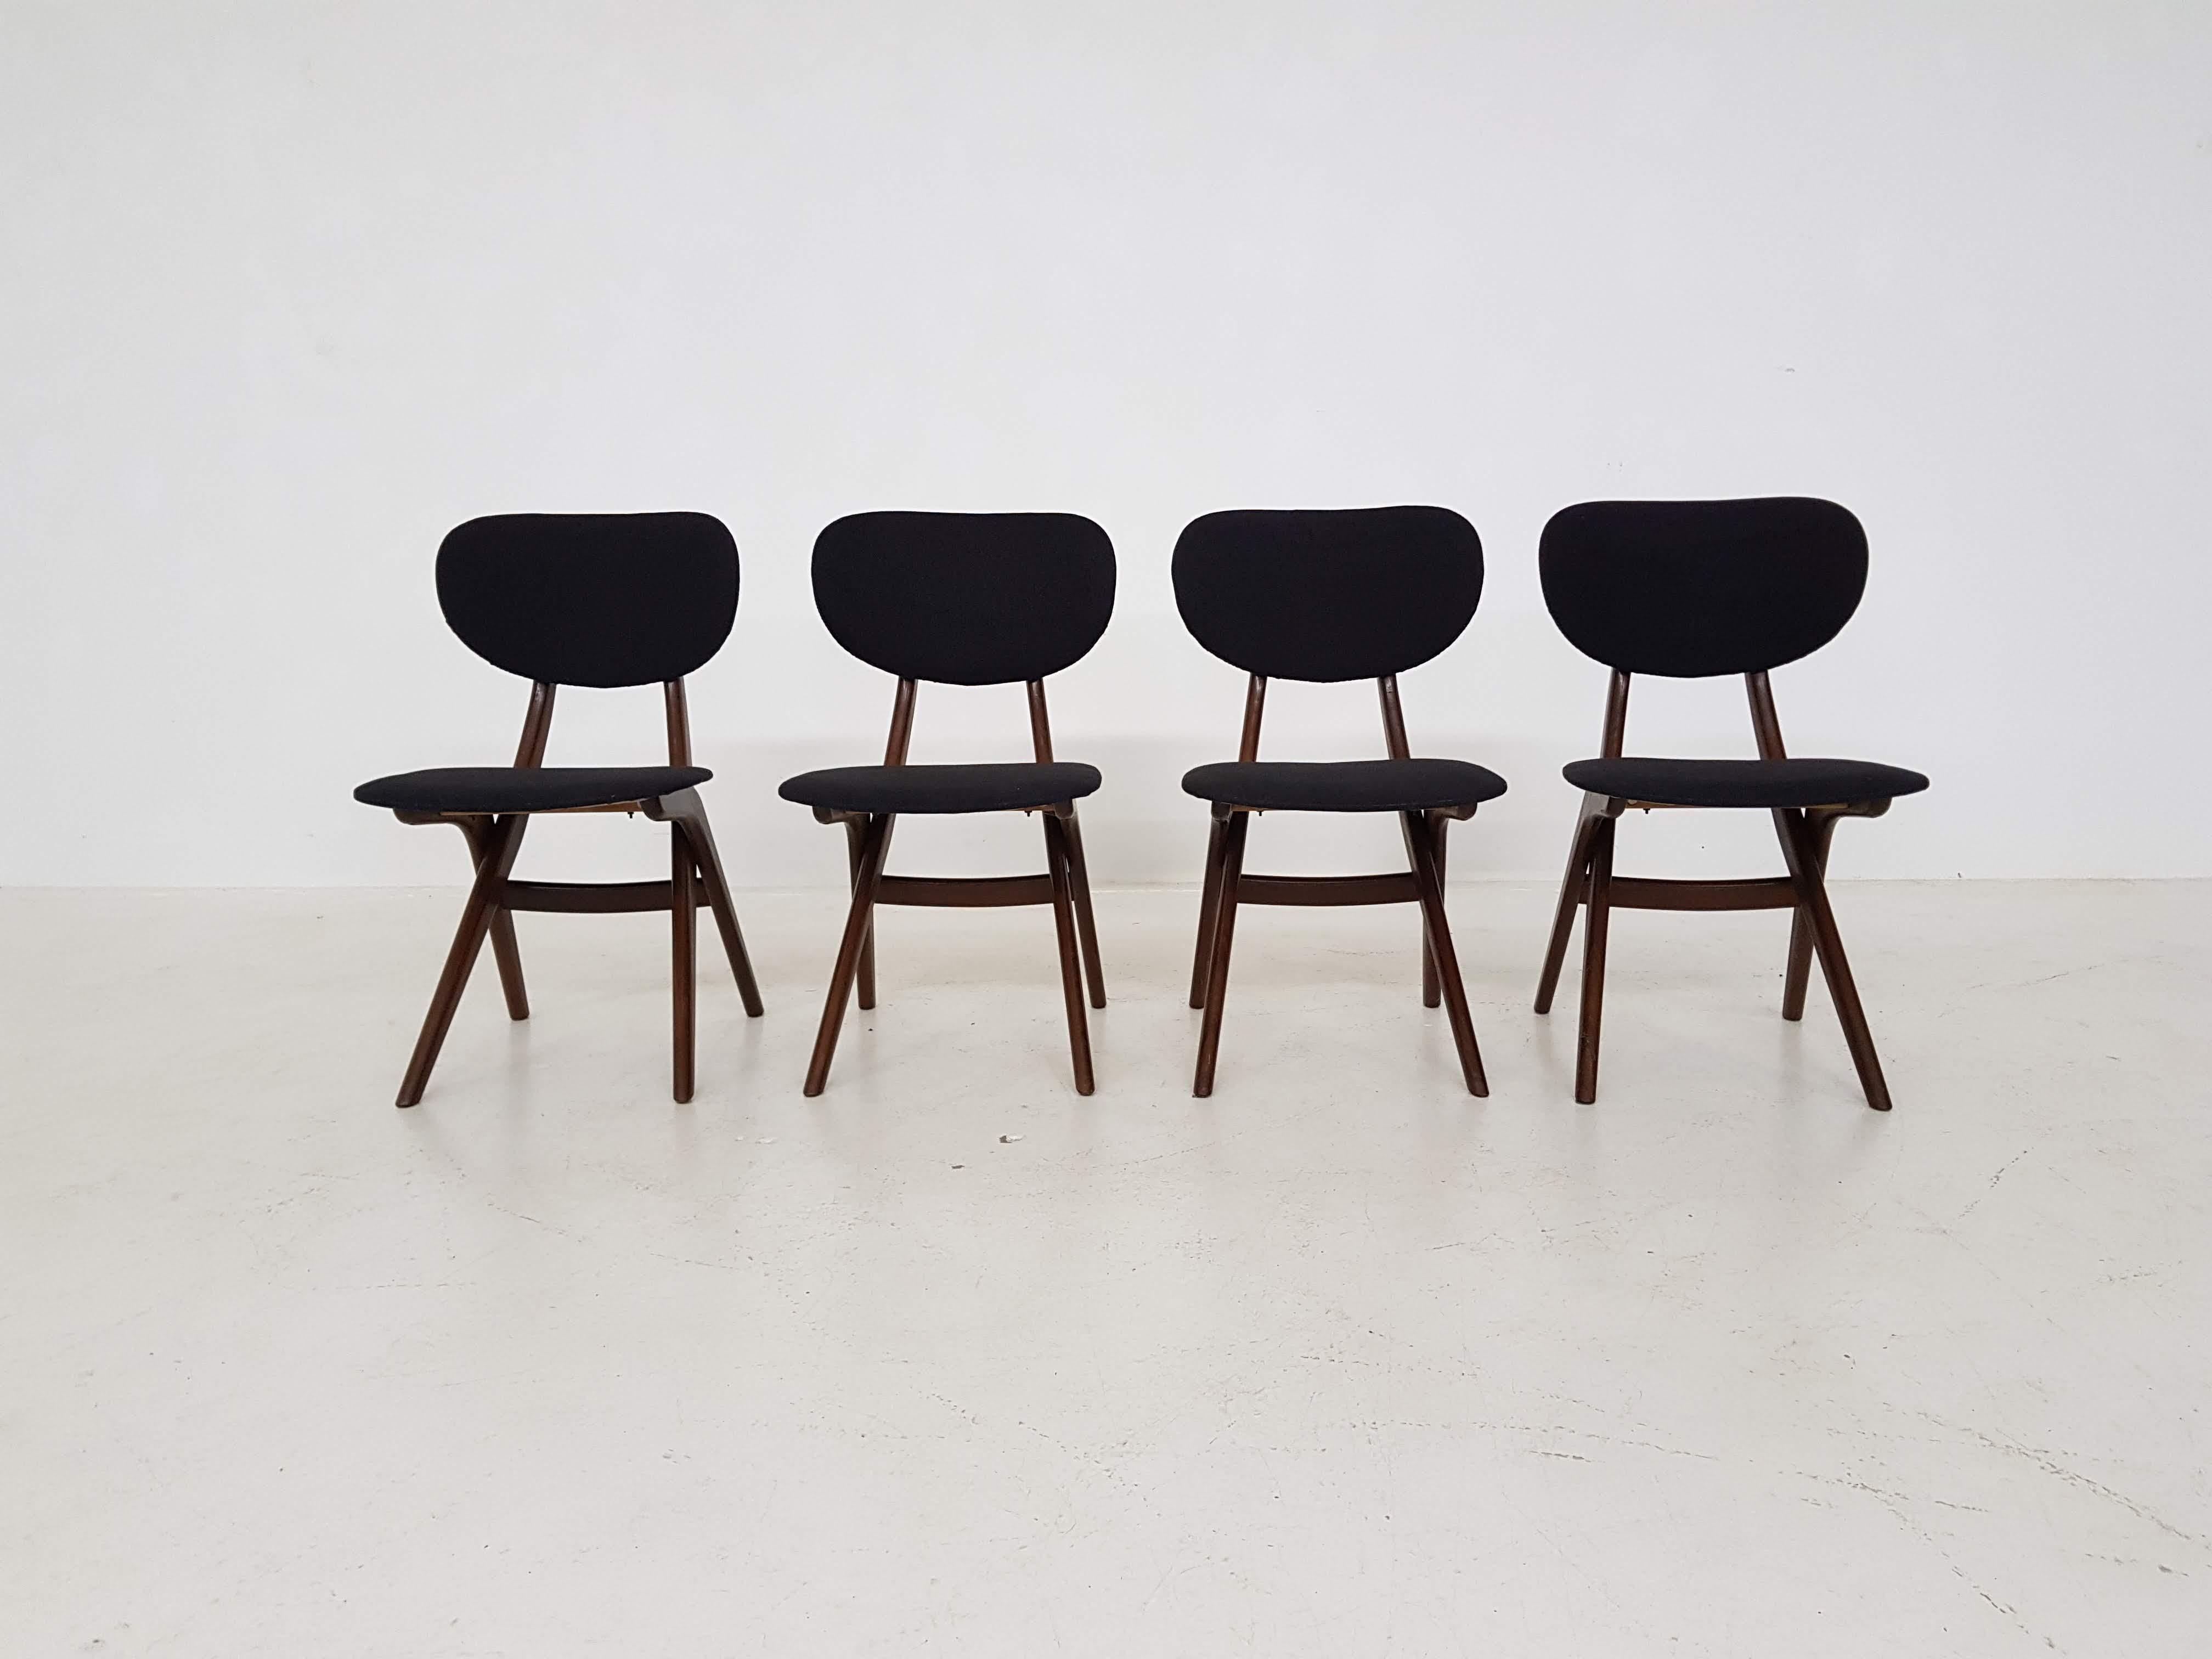 Scandinavian Modern Dining Chairs by Louis van Teeffelen for Wébé, Dutch Design, 1950s